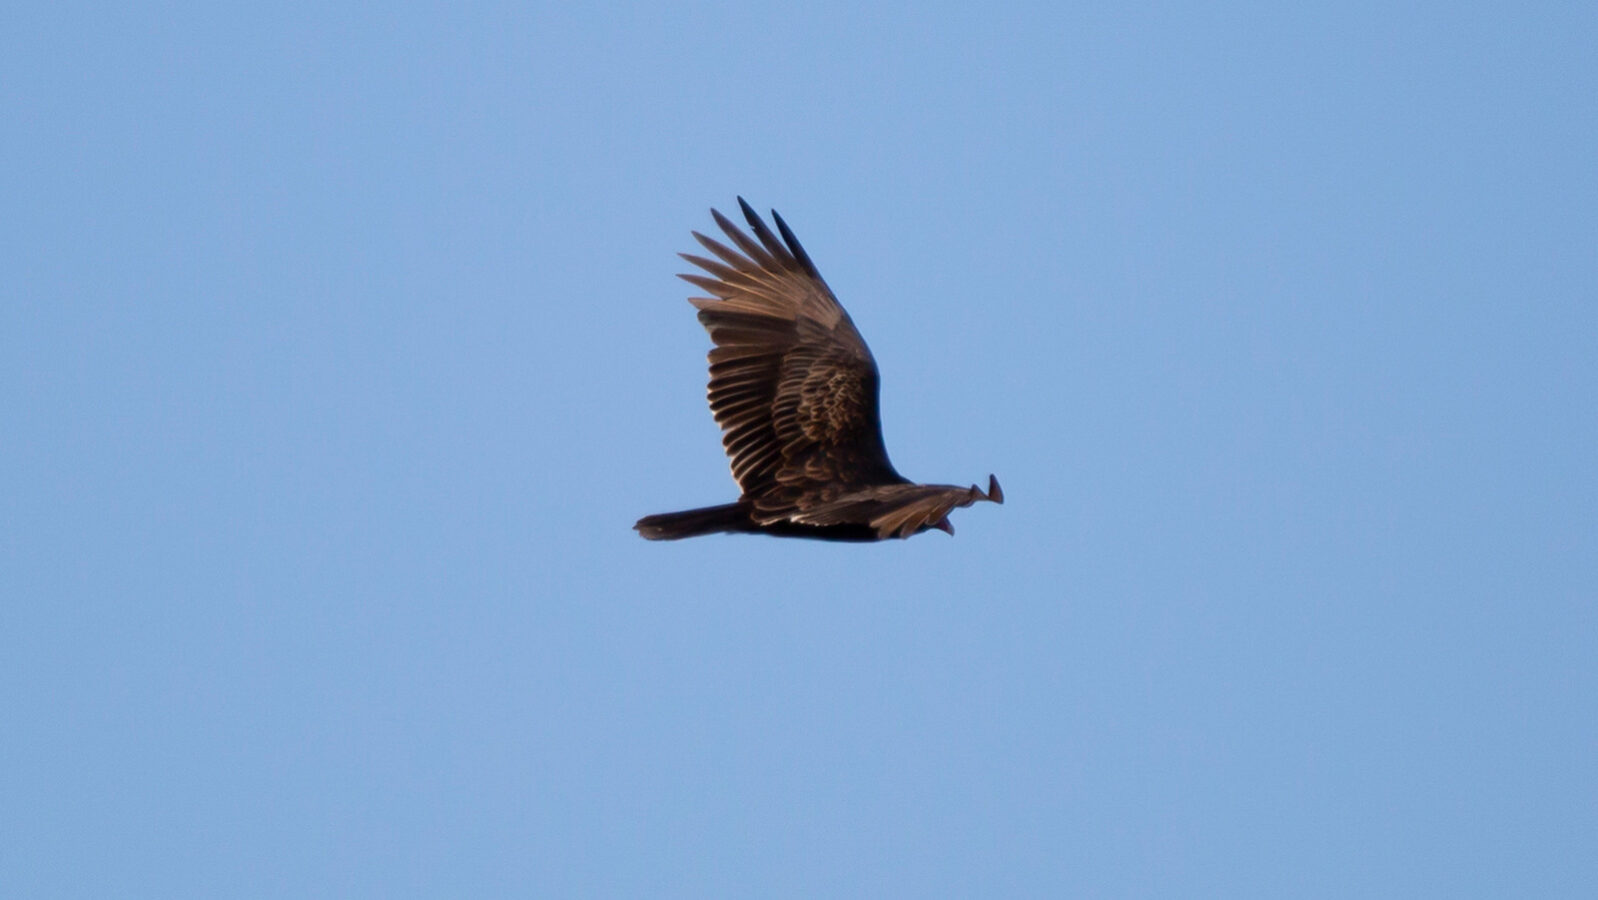 Turkey vulture soaring in blue sky